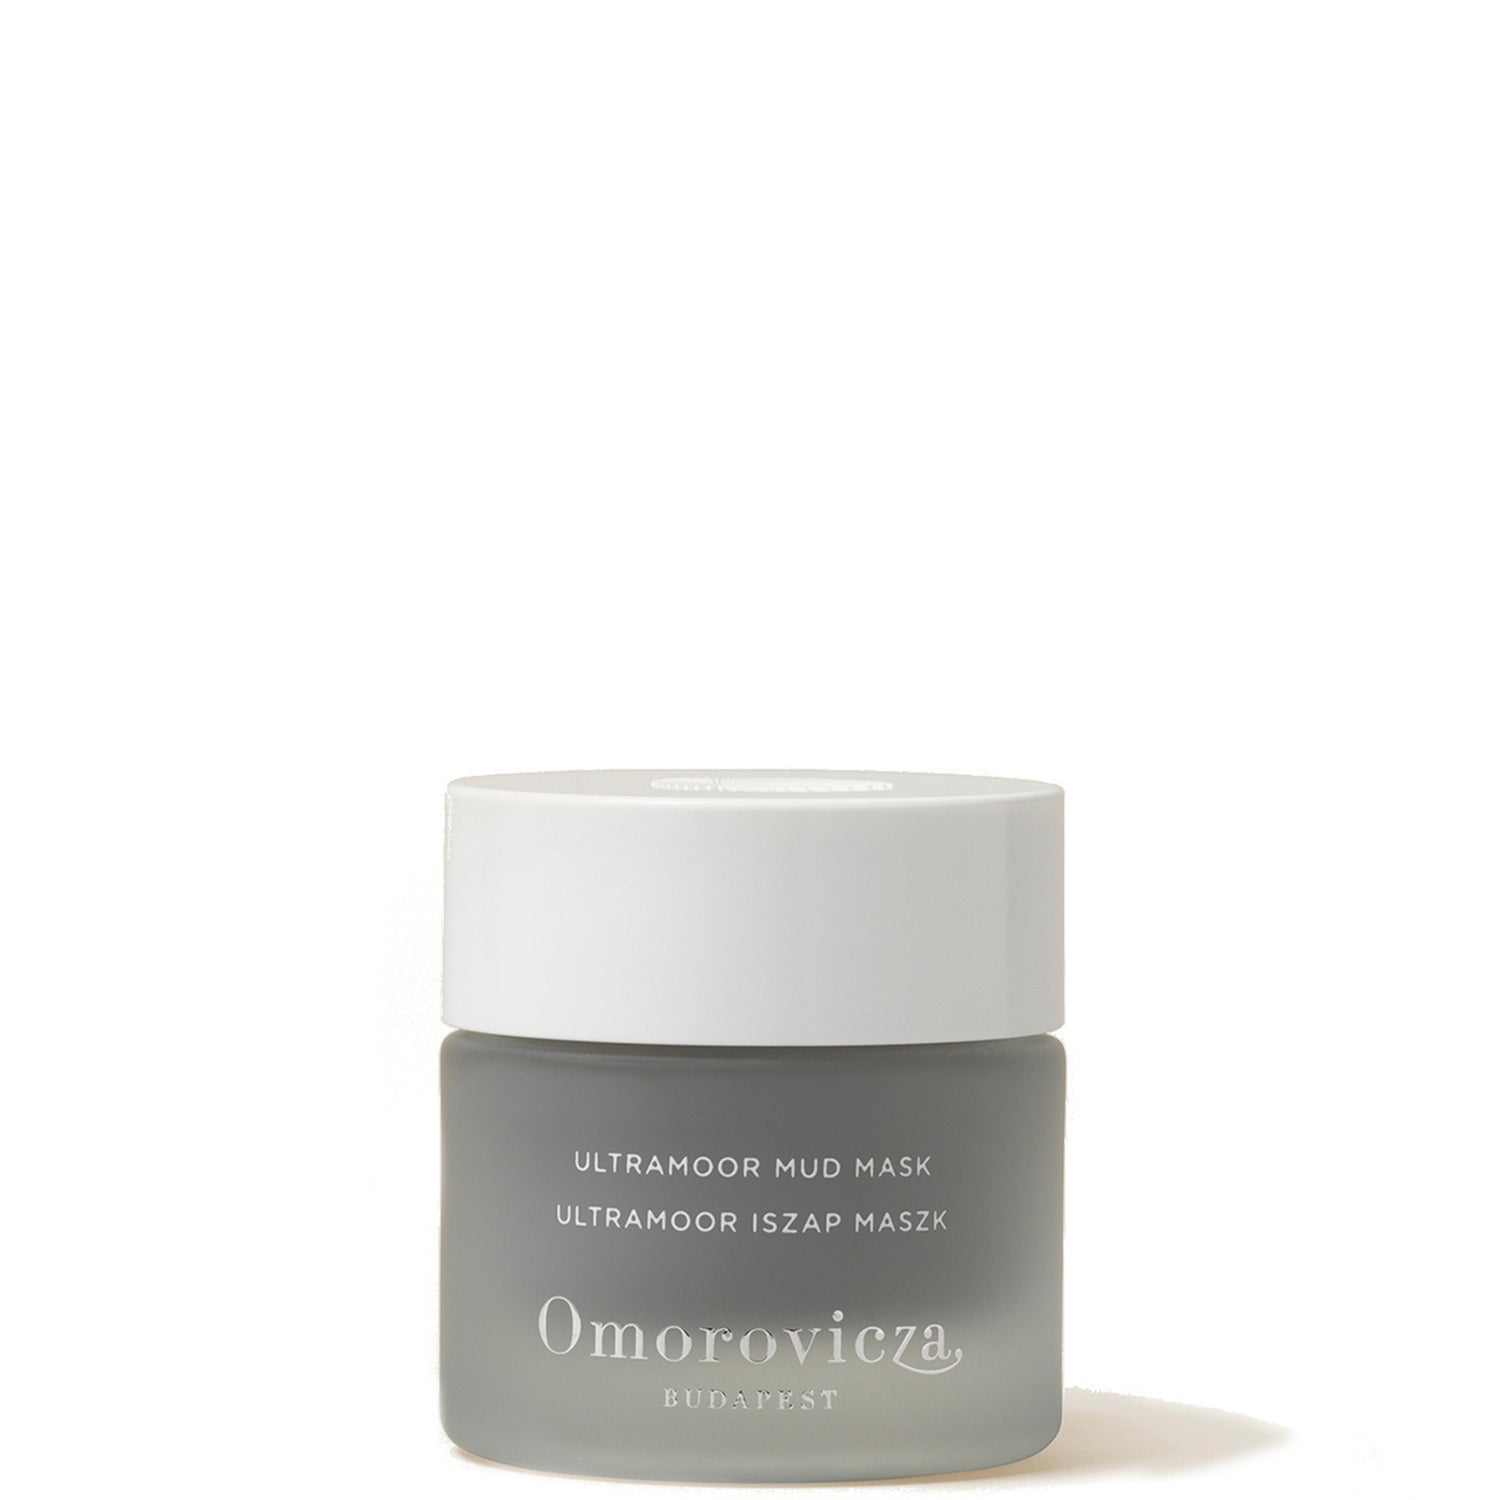 Omorovicza Ultramoor Mud Mask (50ml)